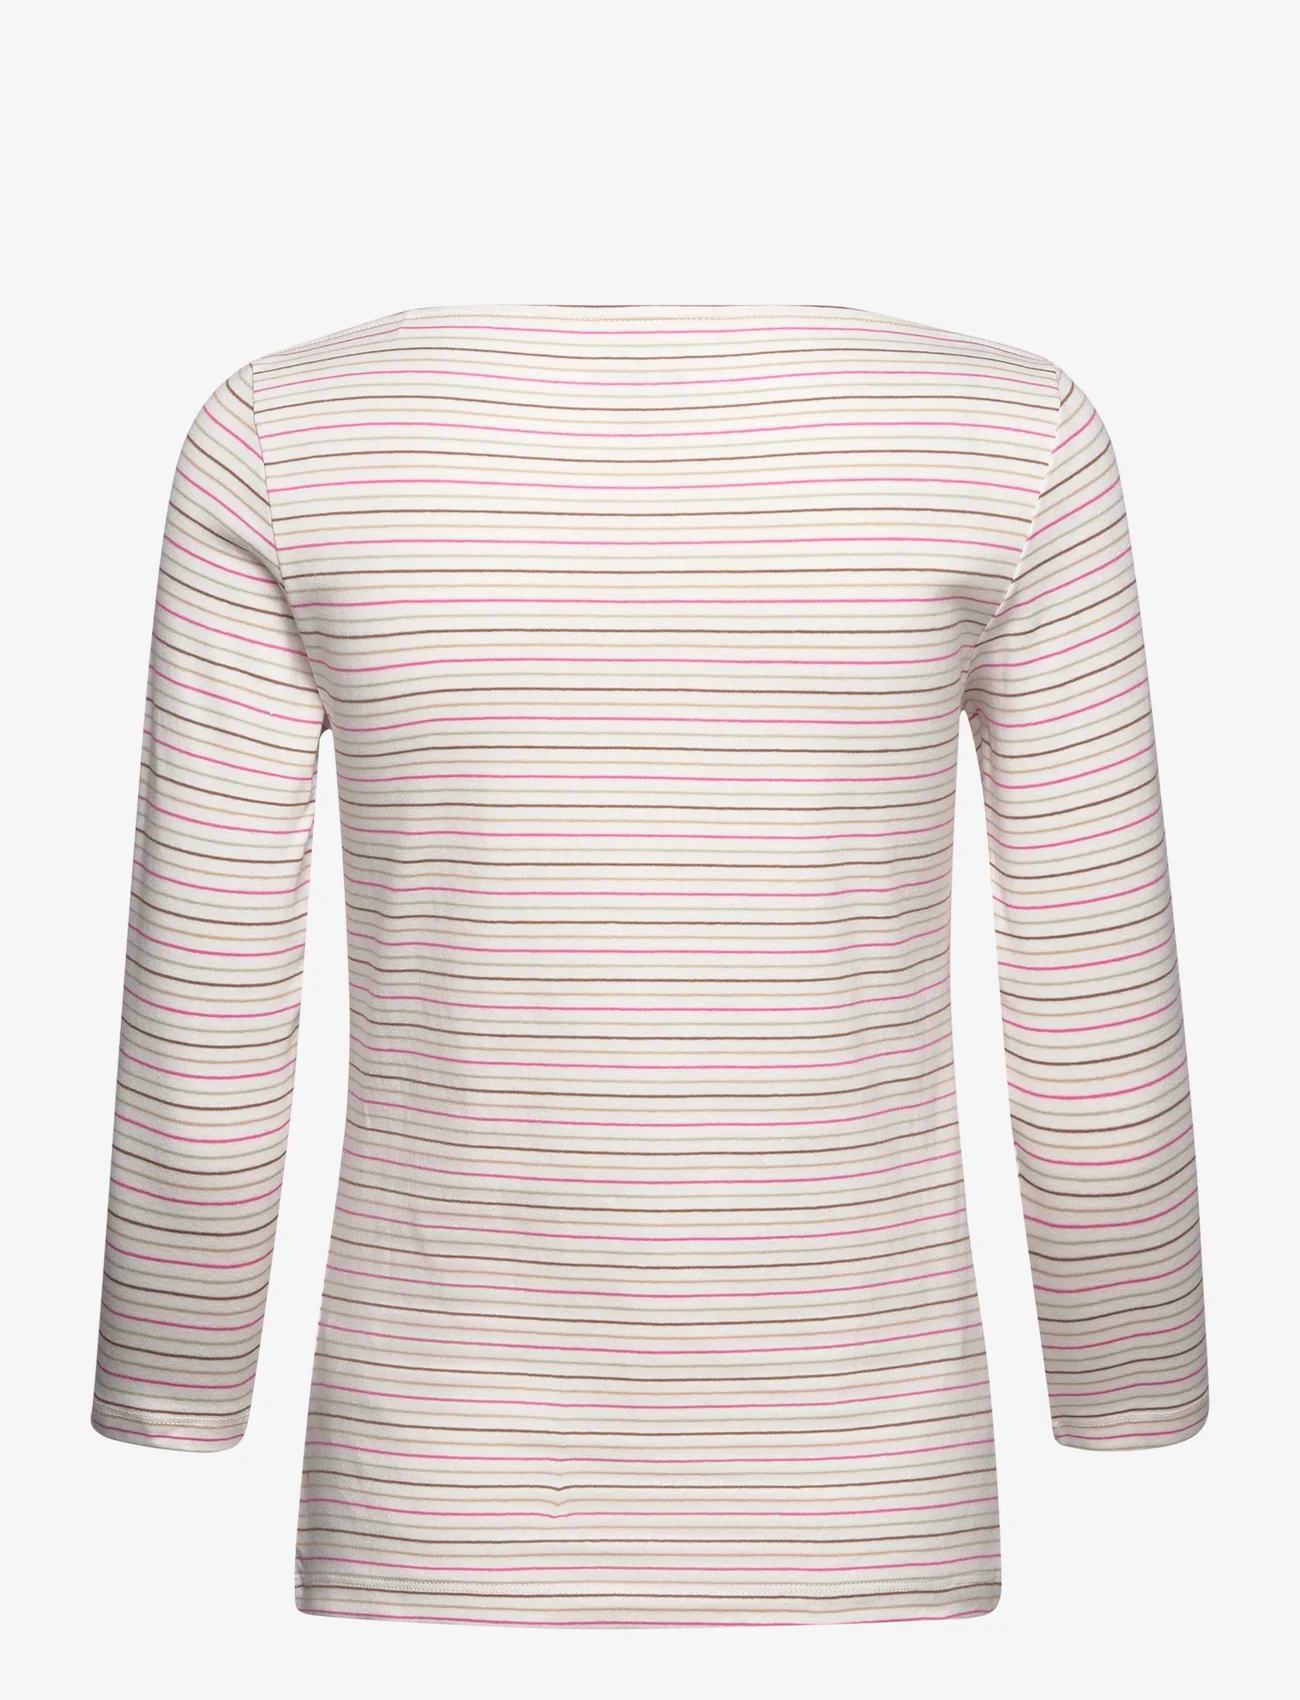 Tom Tailor - T-shirt boat neck stripe - lägsta priserna - pink green multicolor stripe - 1